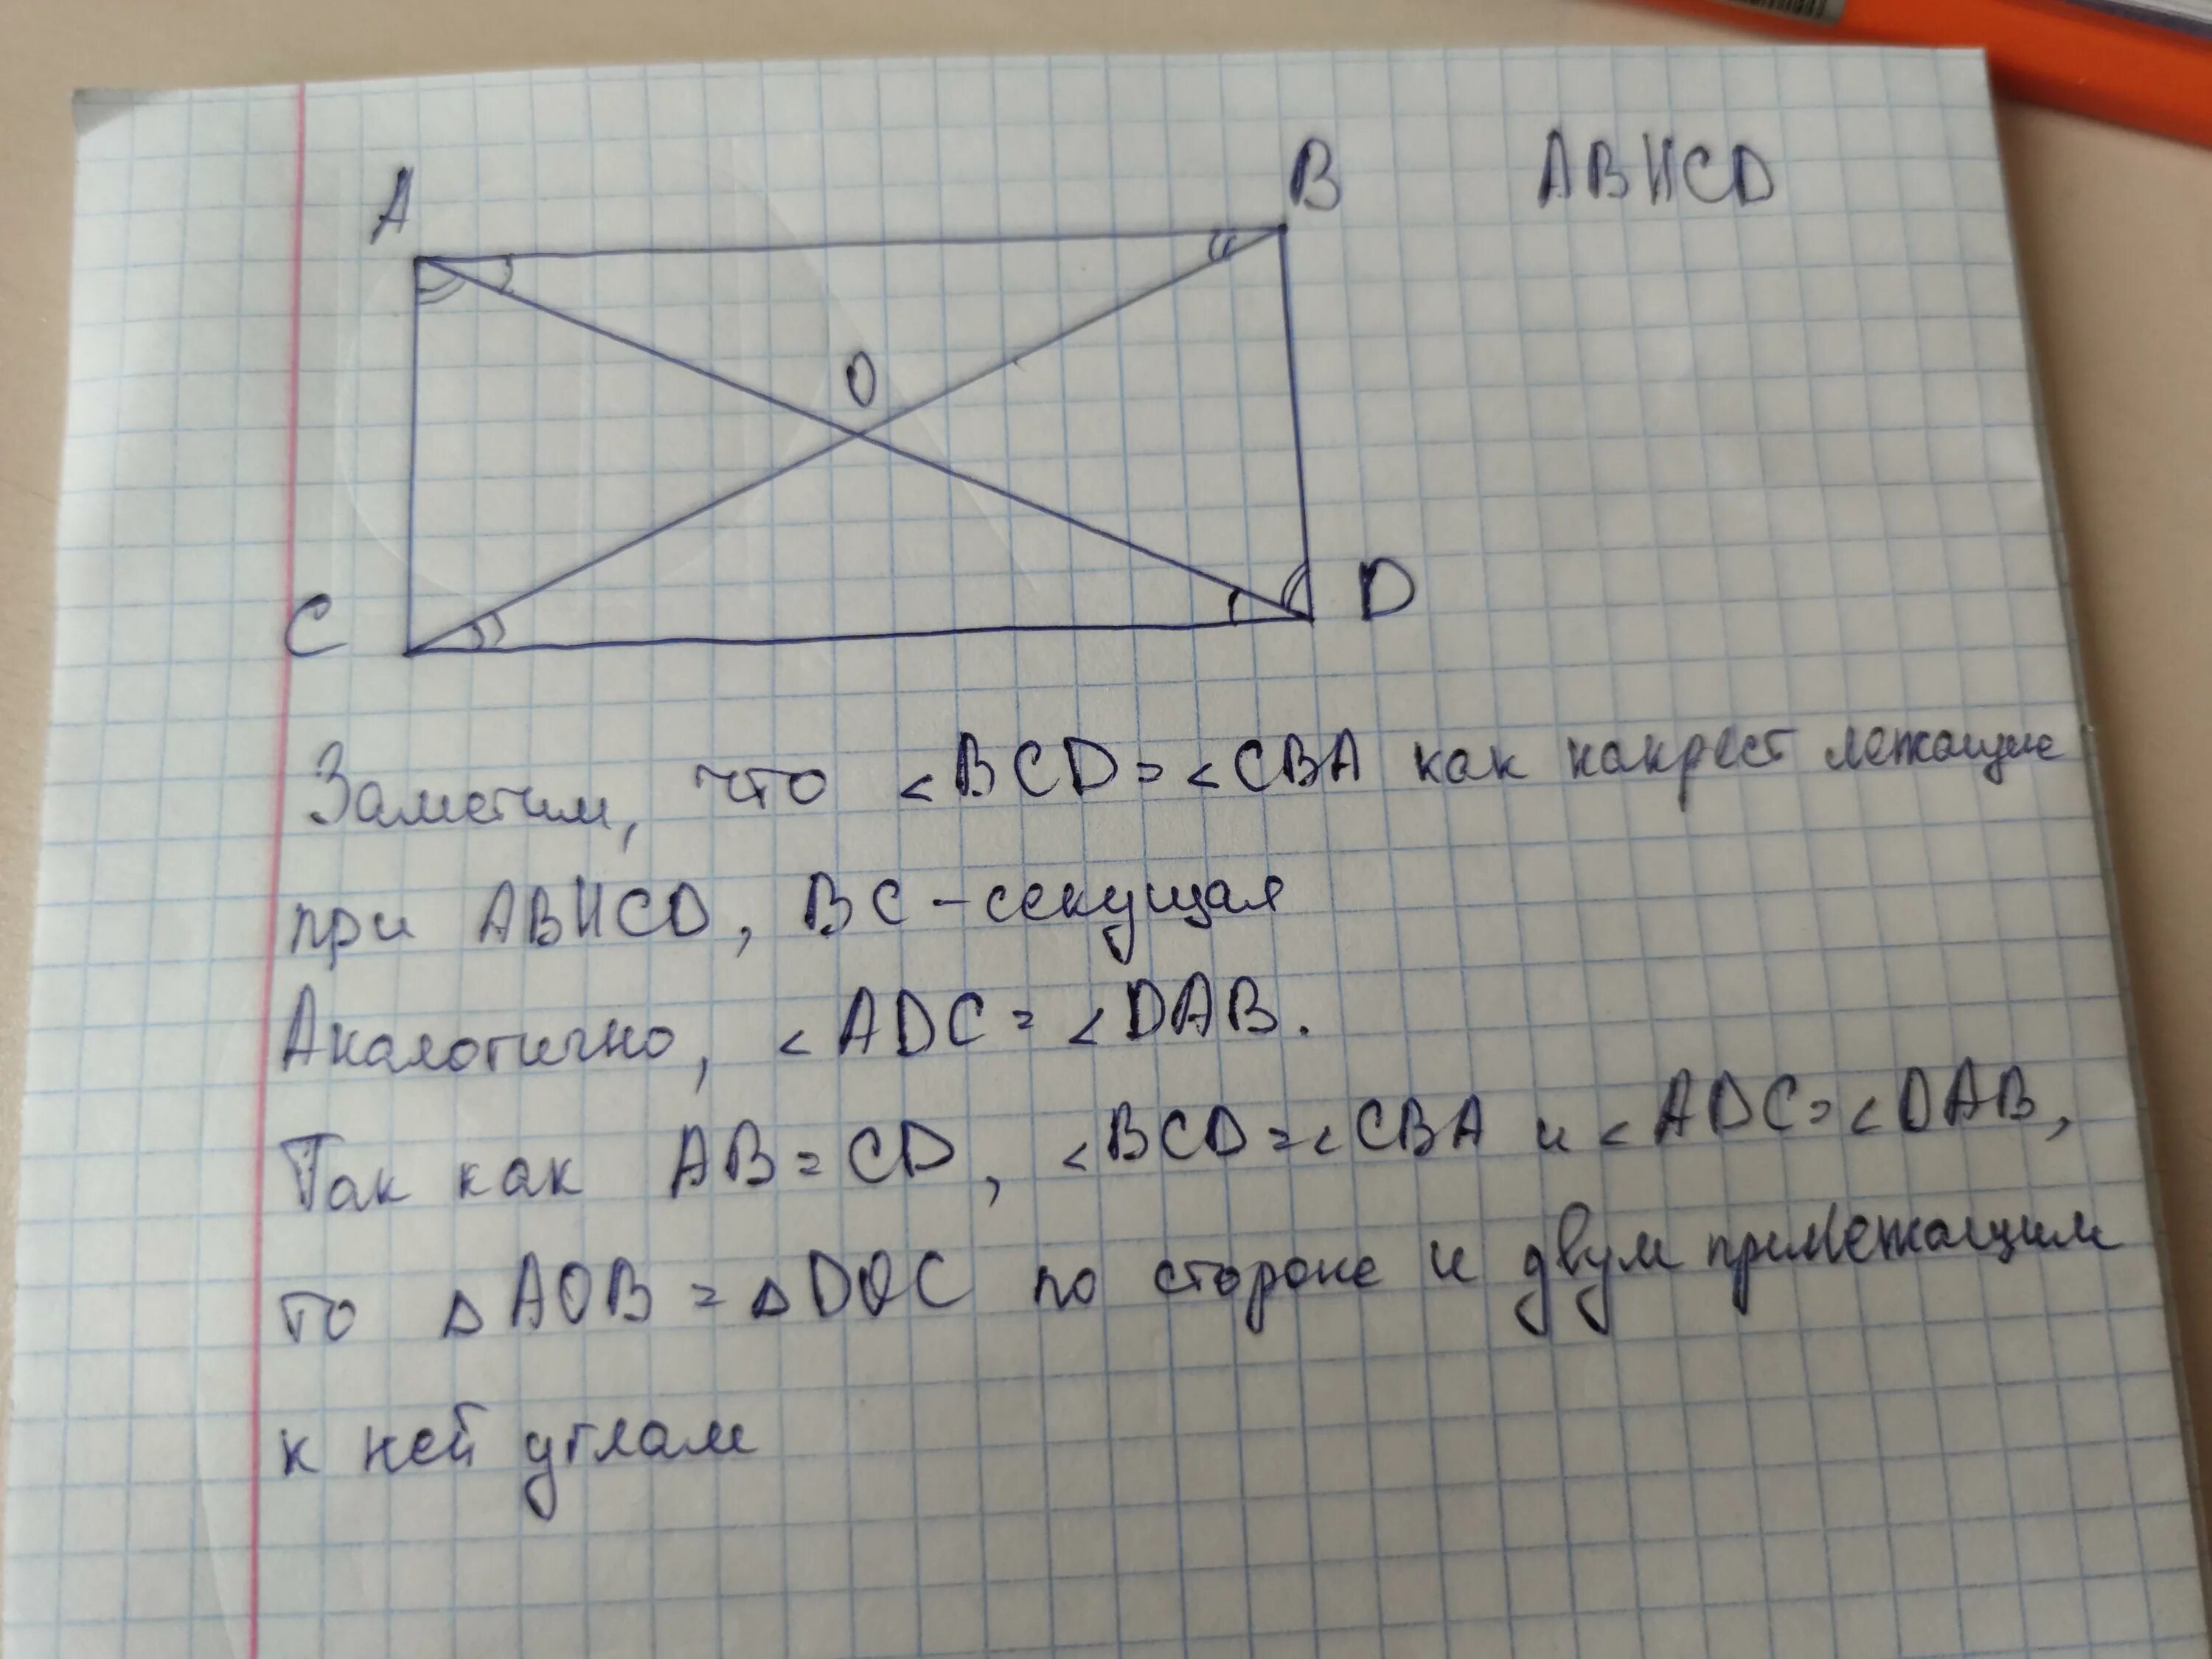 Известно что аб параллельно сд. Ab параллельна CD. Ad параллельно BC ab параллельно CD. Доказать ab параллельно CD. Докажите что треугольник AOB= треугольнику doc.